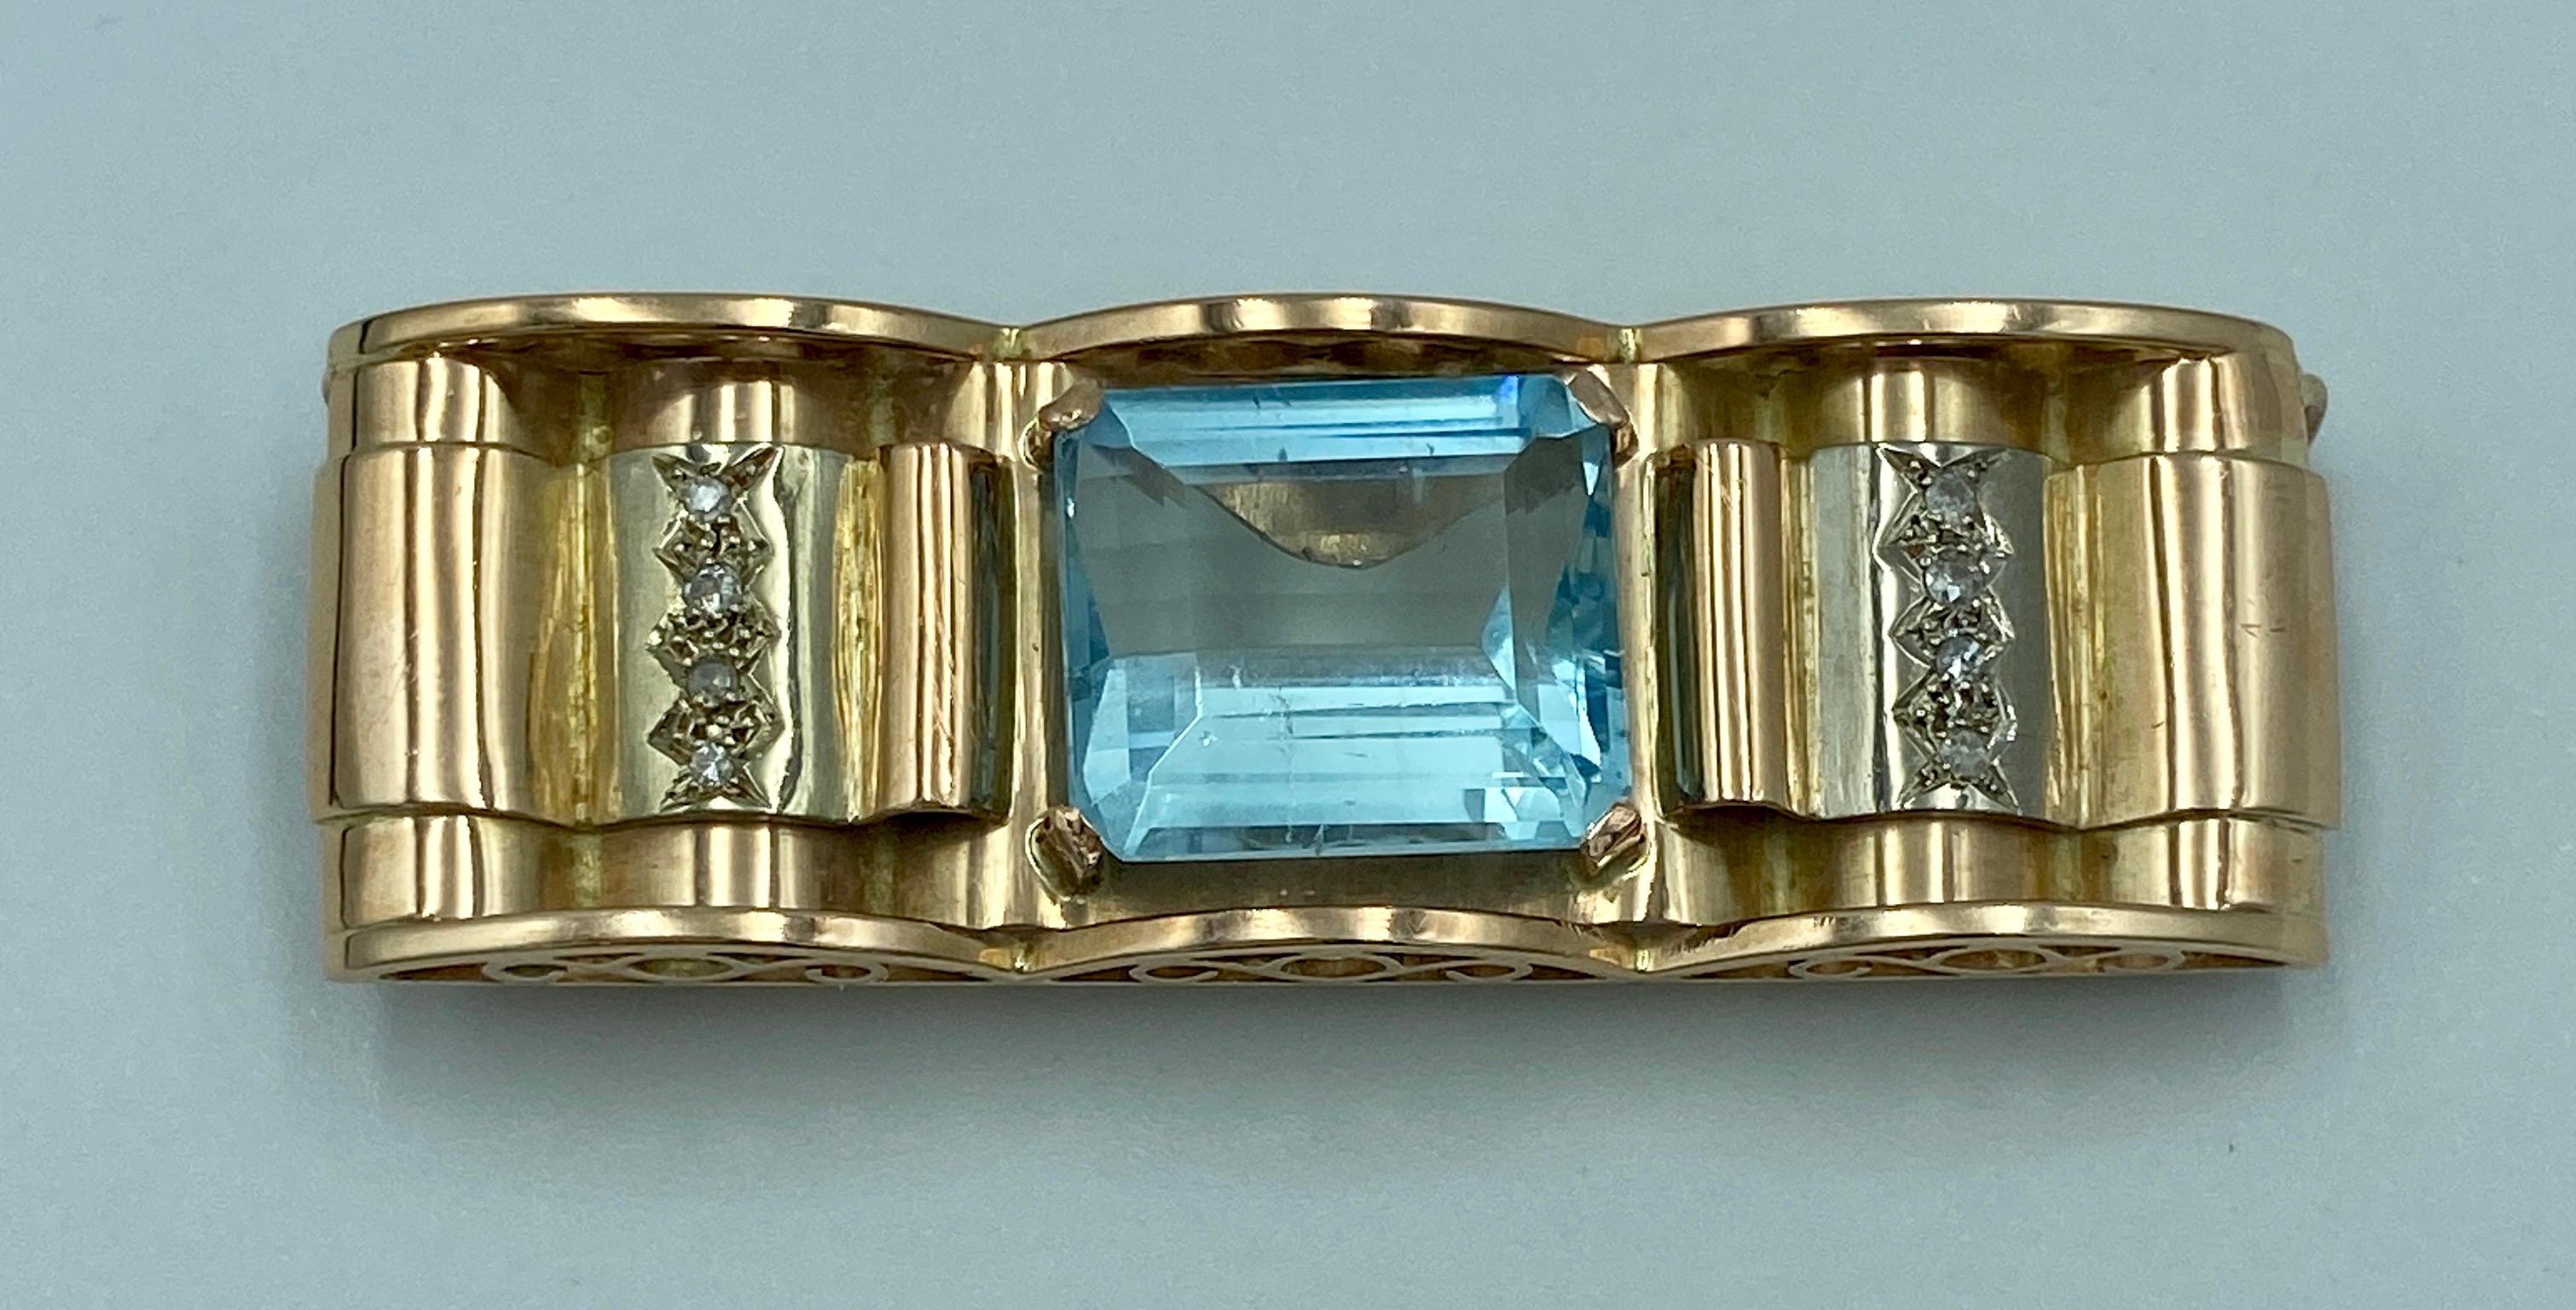 Cette magnifique broche fabriquée en France dans les années 1950 est en or 18 carats et présente une aigue-marine taille émeraude d'environ 12 carats et un total de diamants taille unique de 0,25 carat. 

Il s'agit d'une pièce étonnante en soi, mais